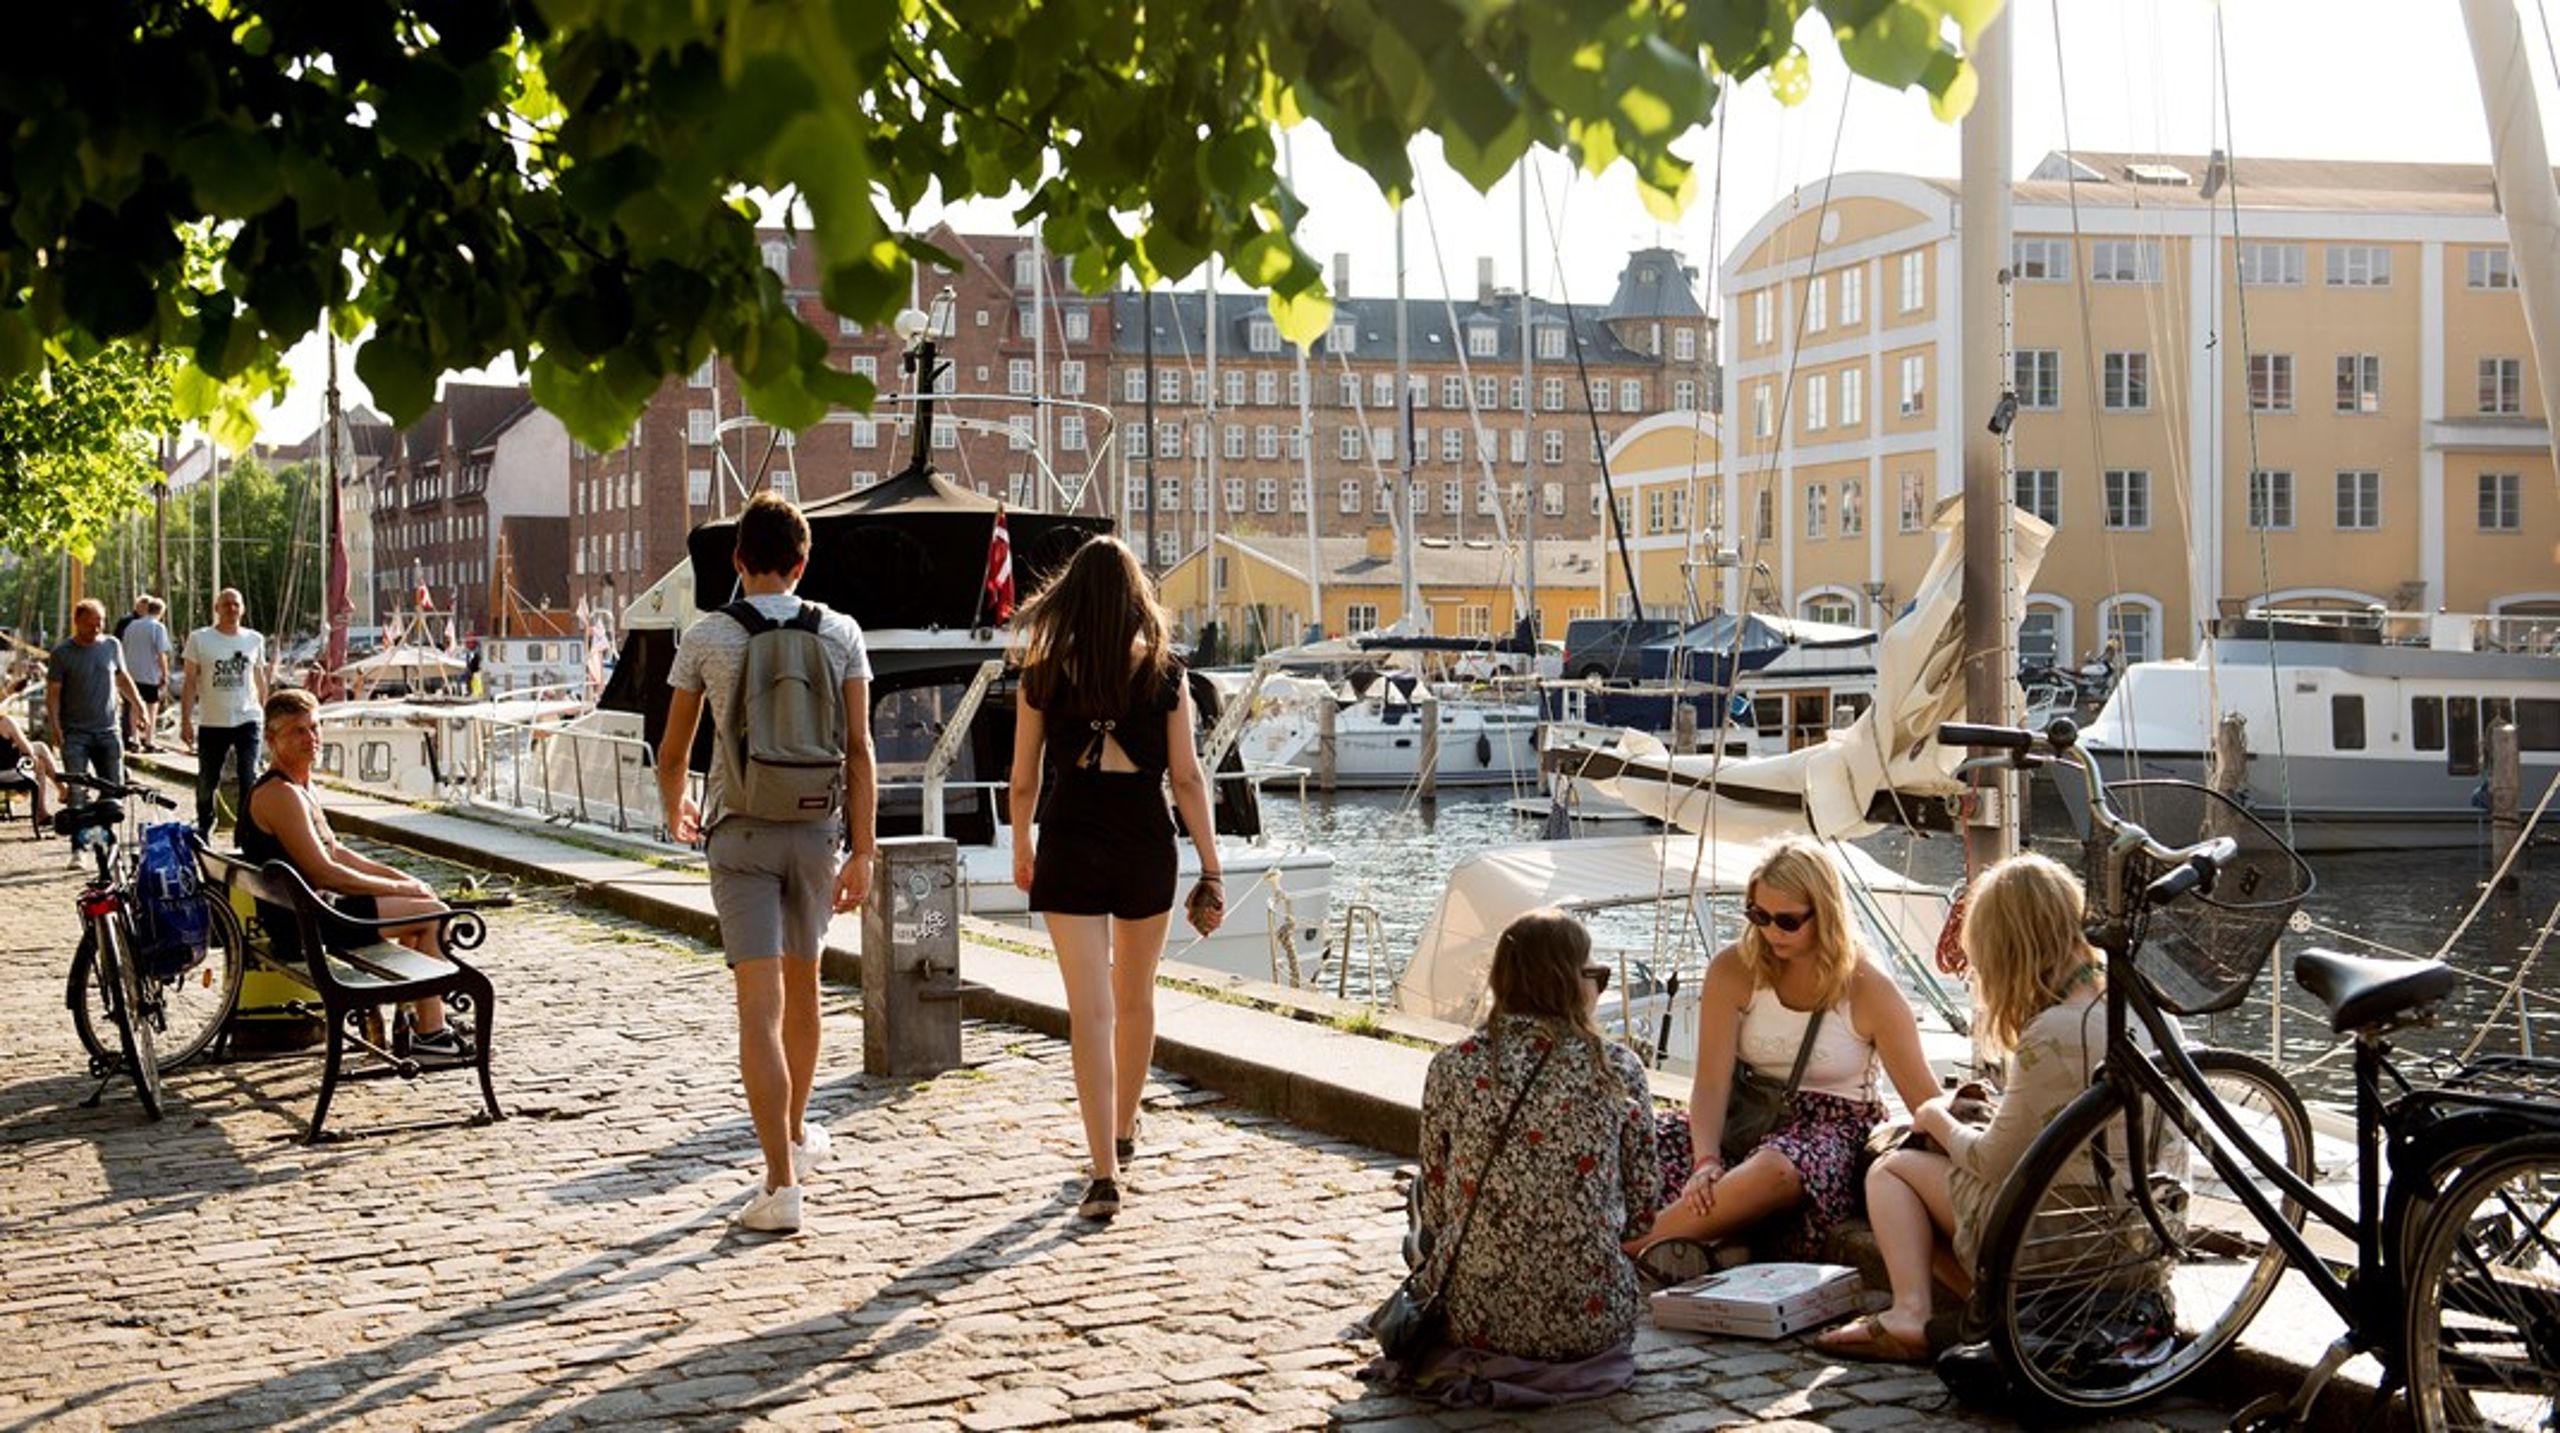 København er en fantastisk by at bebo og besøge. Vores by skal være et gæstfrit sted, som turisterne kan nyde godt af, men vi skal samtidig være bevidste om, at de slider på byen, skriver Asbjørn Kaasgaard. Arkivfoto.